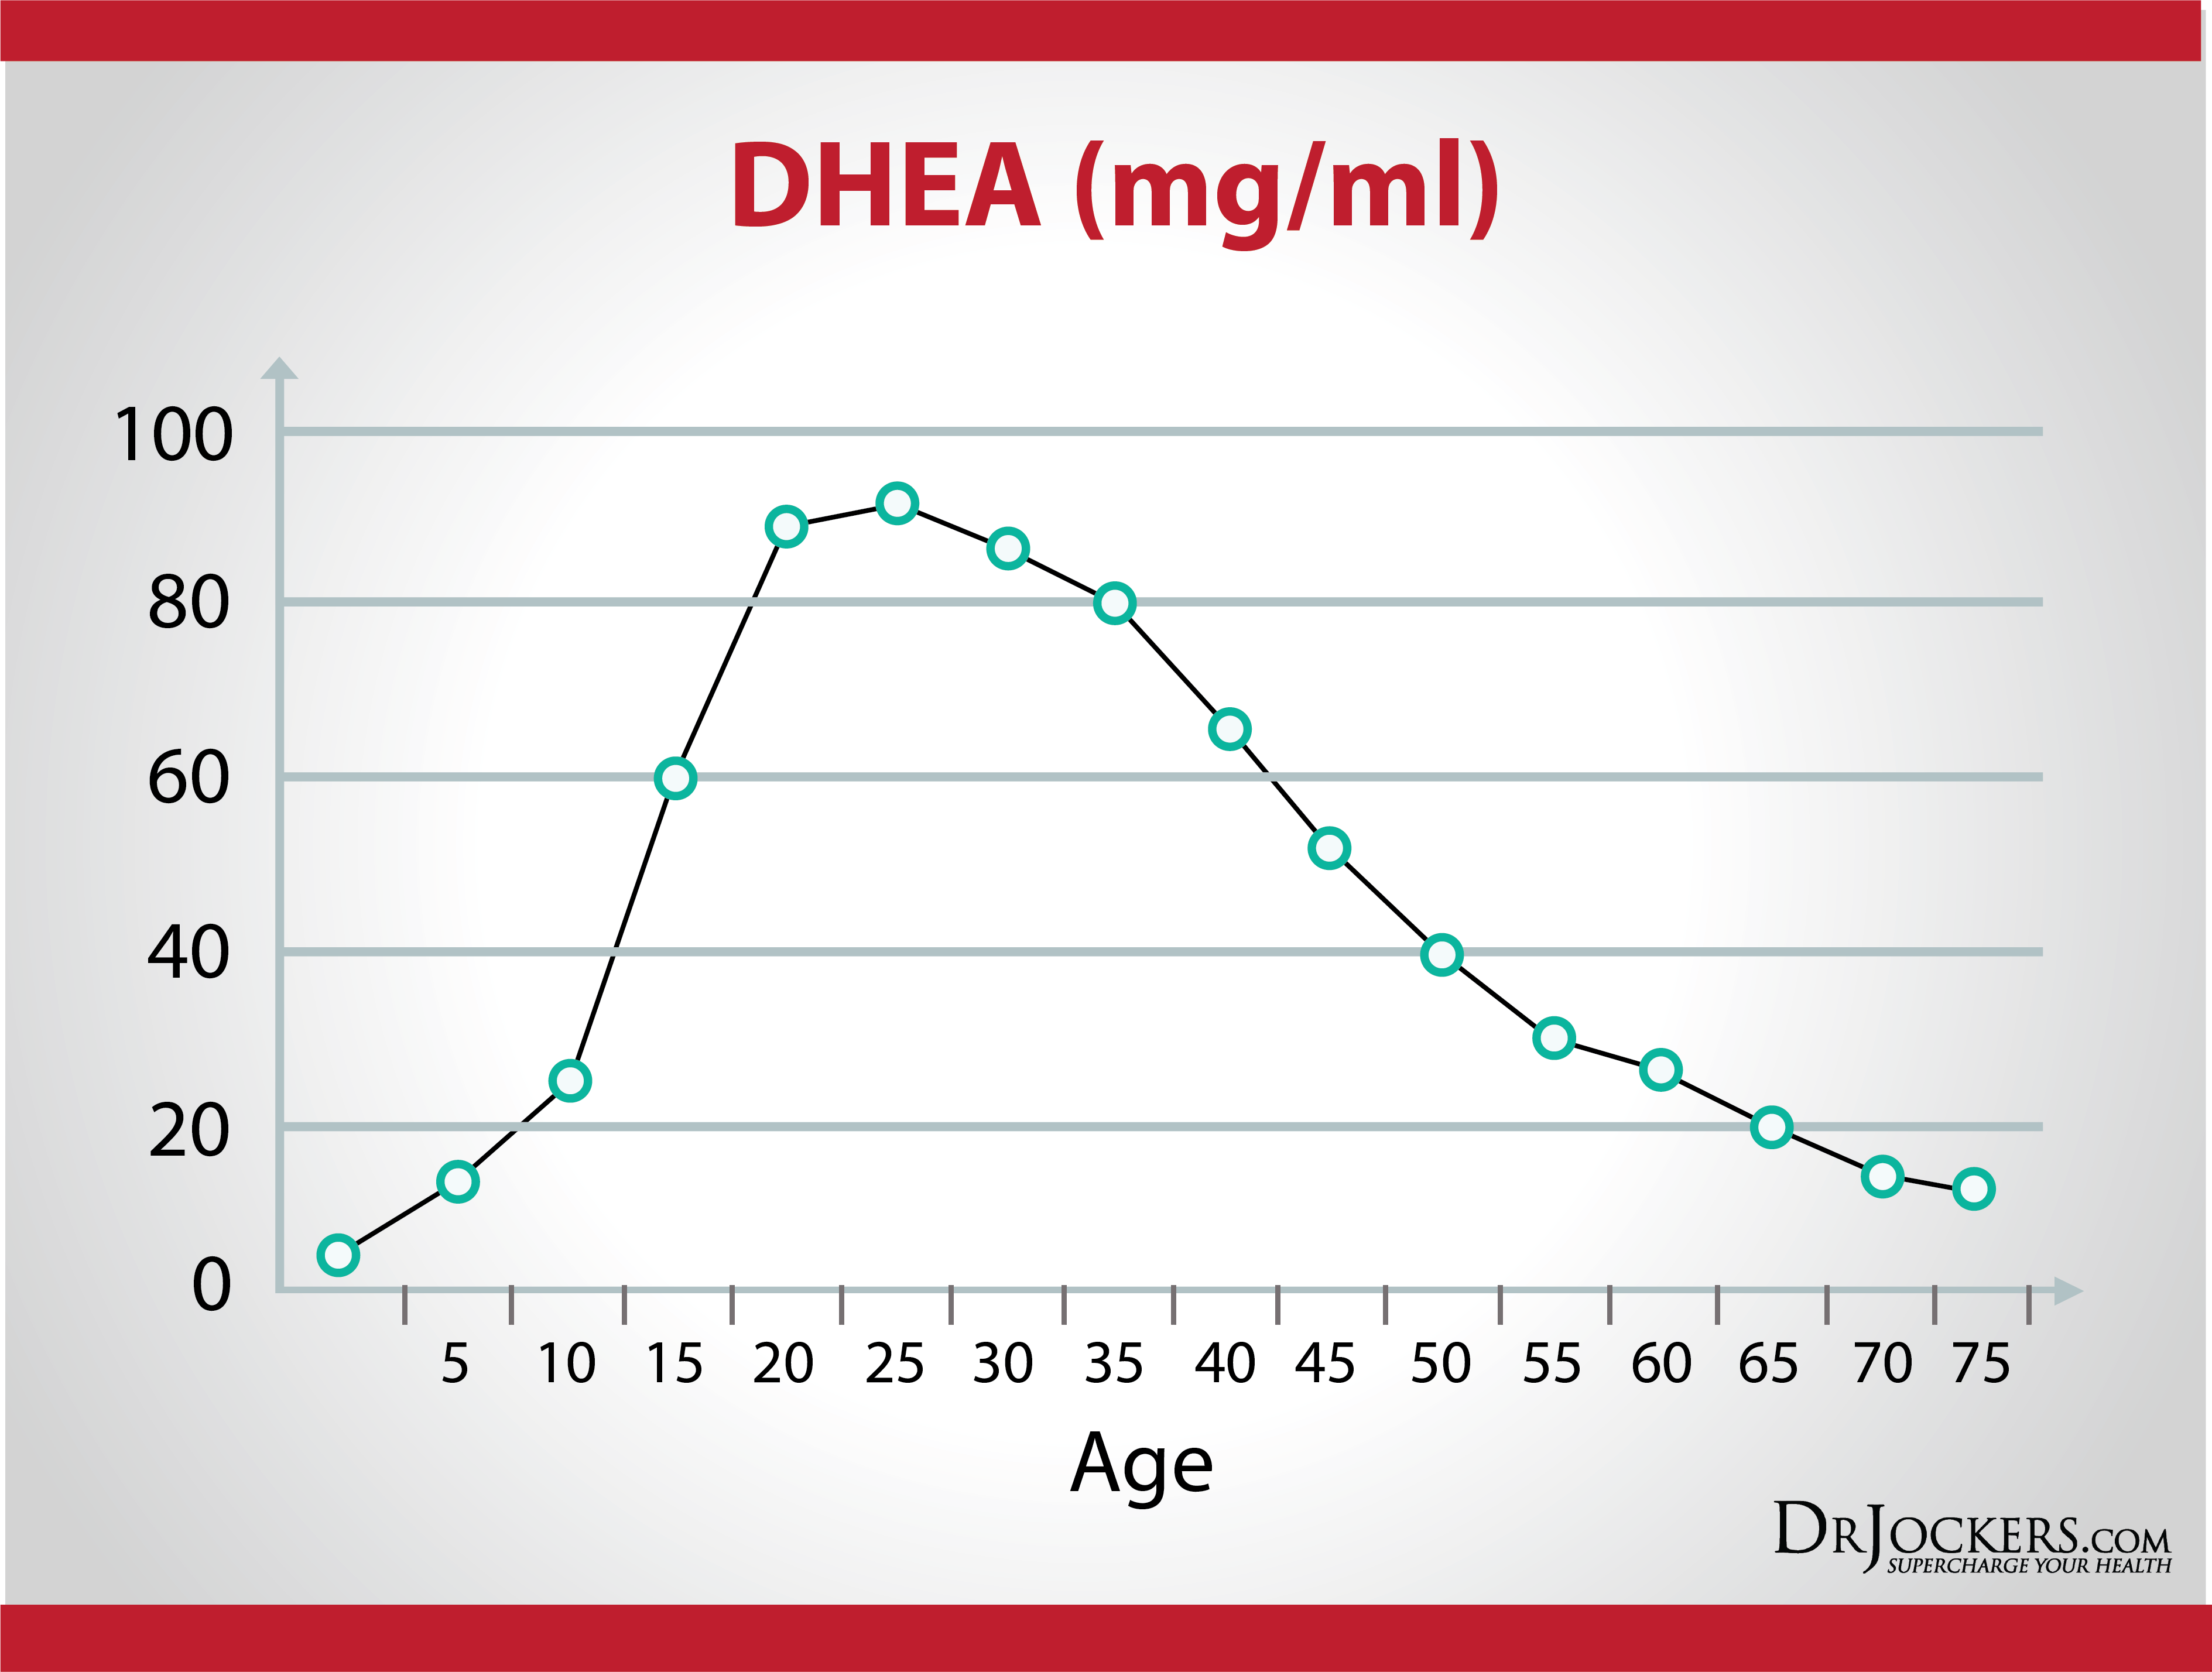 DHEA levels